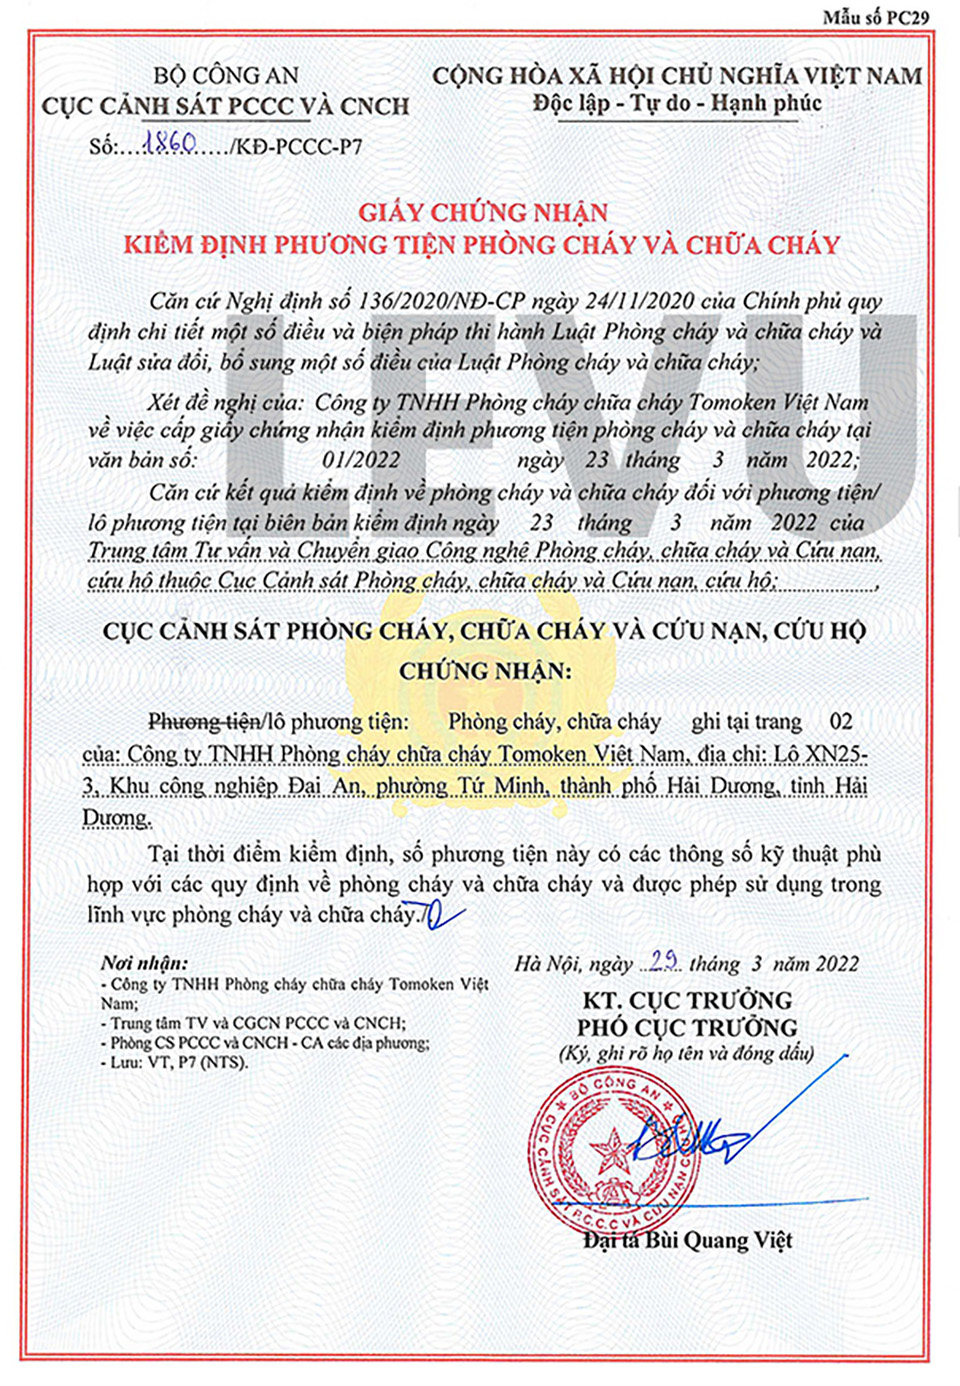 giấy chứng nhận kiểm định phương tiện phòng cháy chữa cháy từ cục cảnh sát PCCC và CNCH